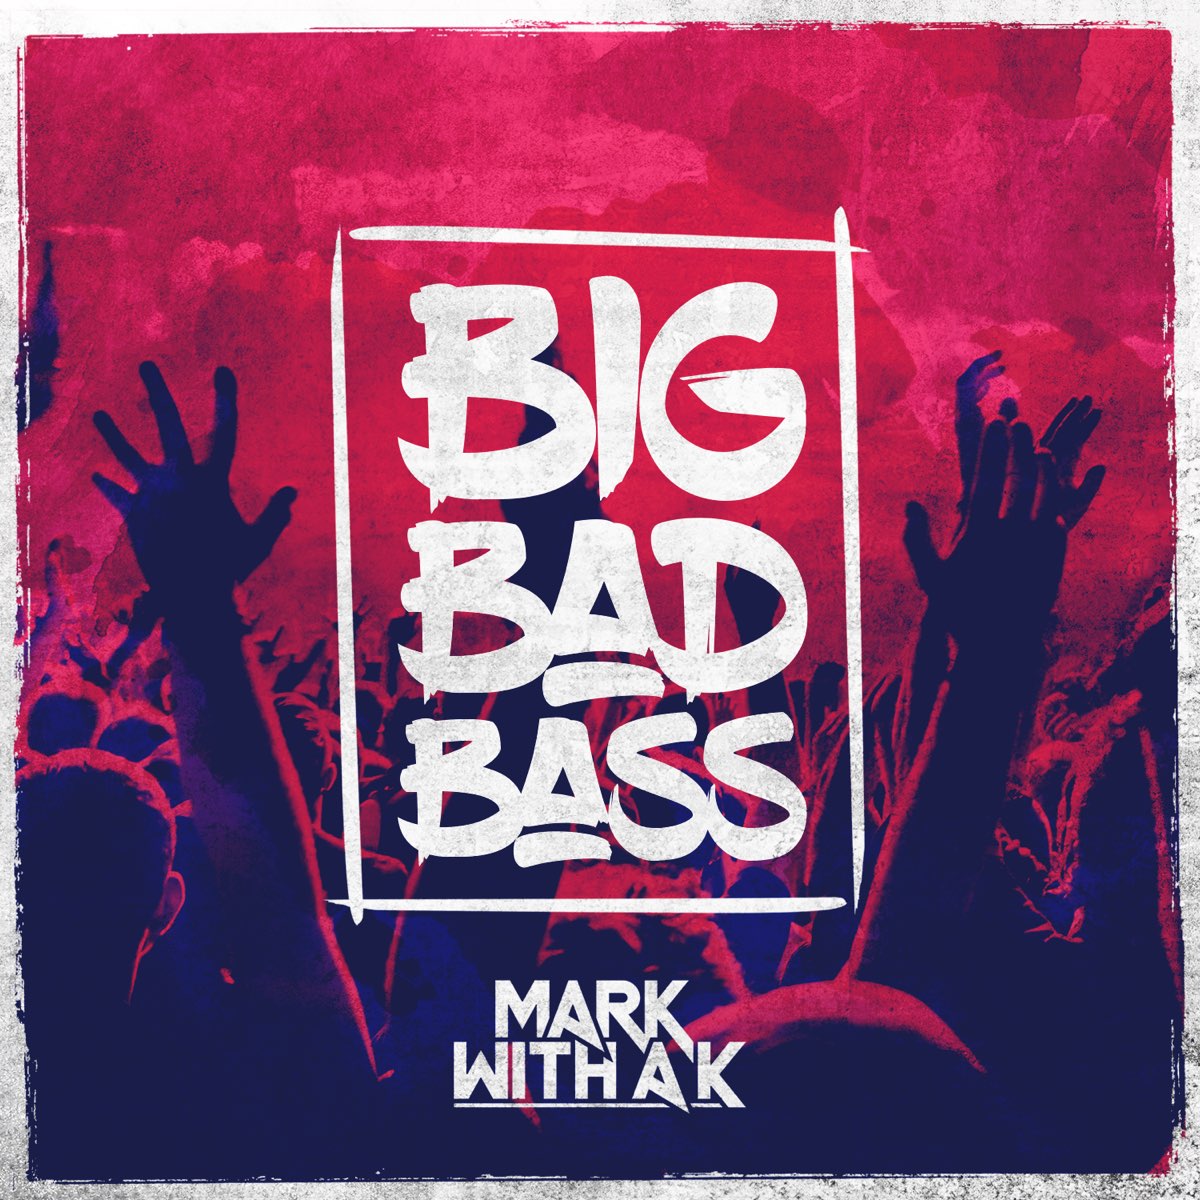 Bass edits. Big Bad Bass. Mark with a k - big Bad Bass. Bad Mark. Big Bad.